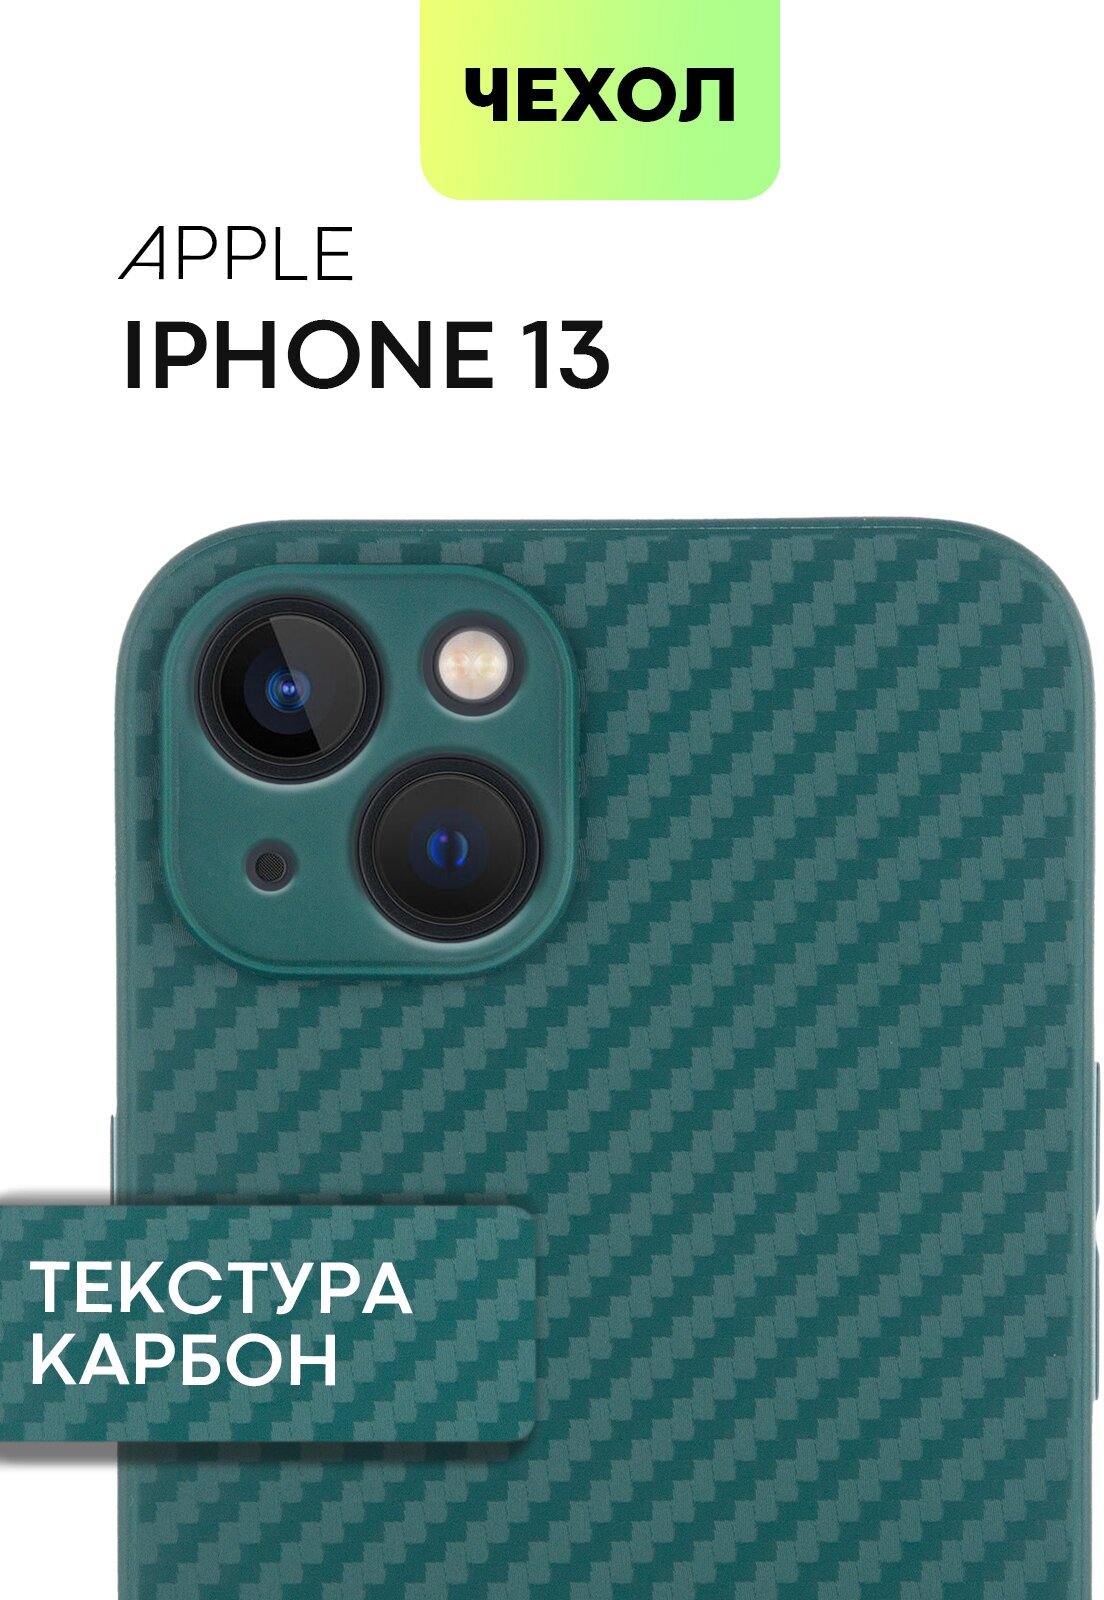 Чехол BROSCORP для Apple iPhone 13 (Эпл Айфон 13) с текстурой карбон, надежно лежит в руке и не выскальзывает, зеленый чехол